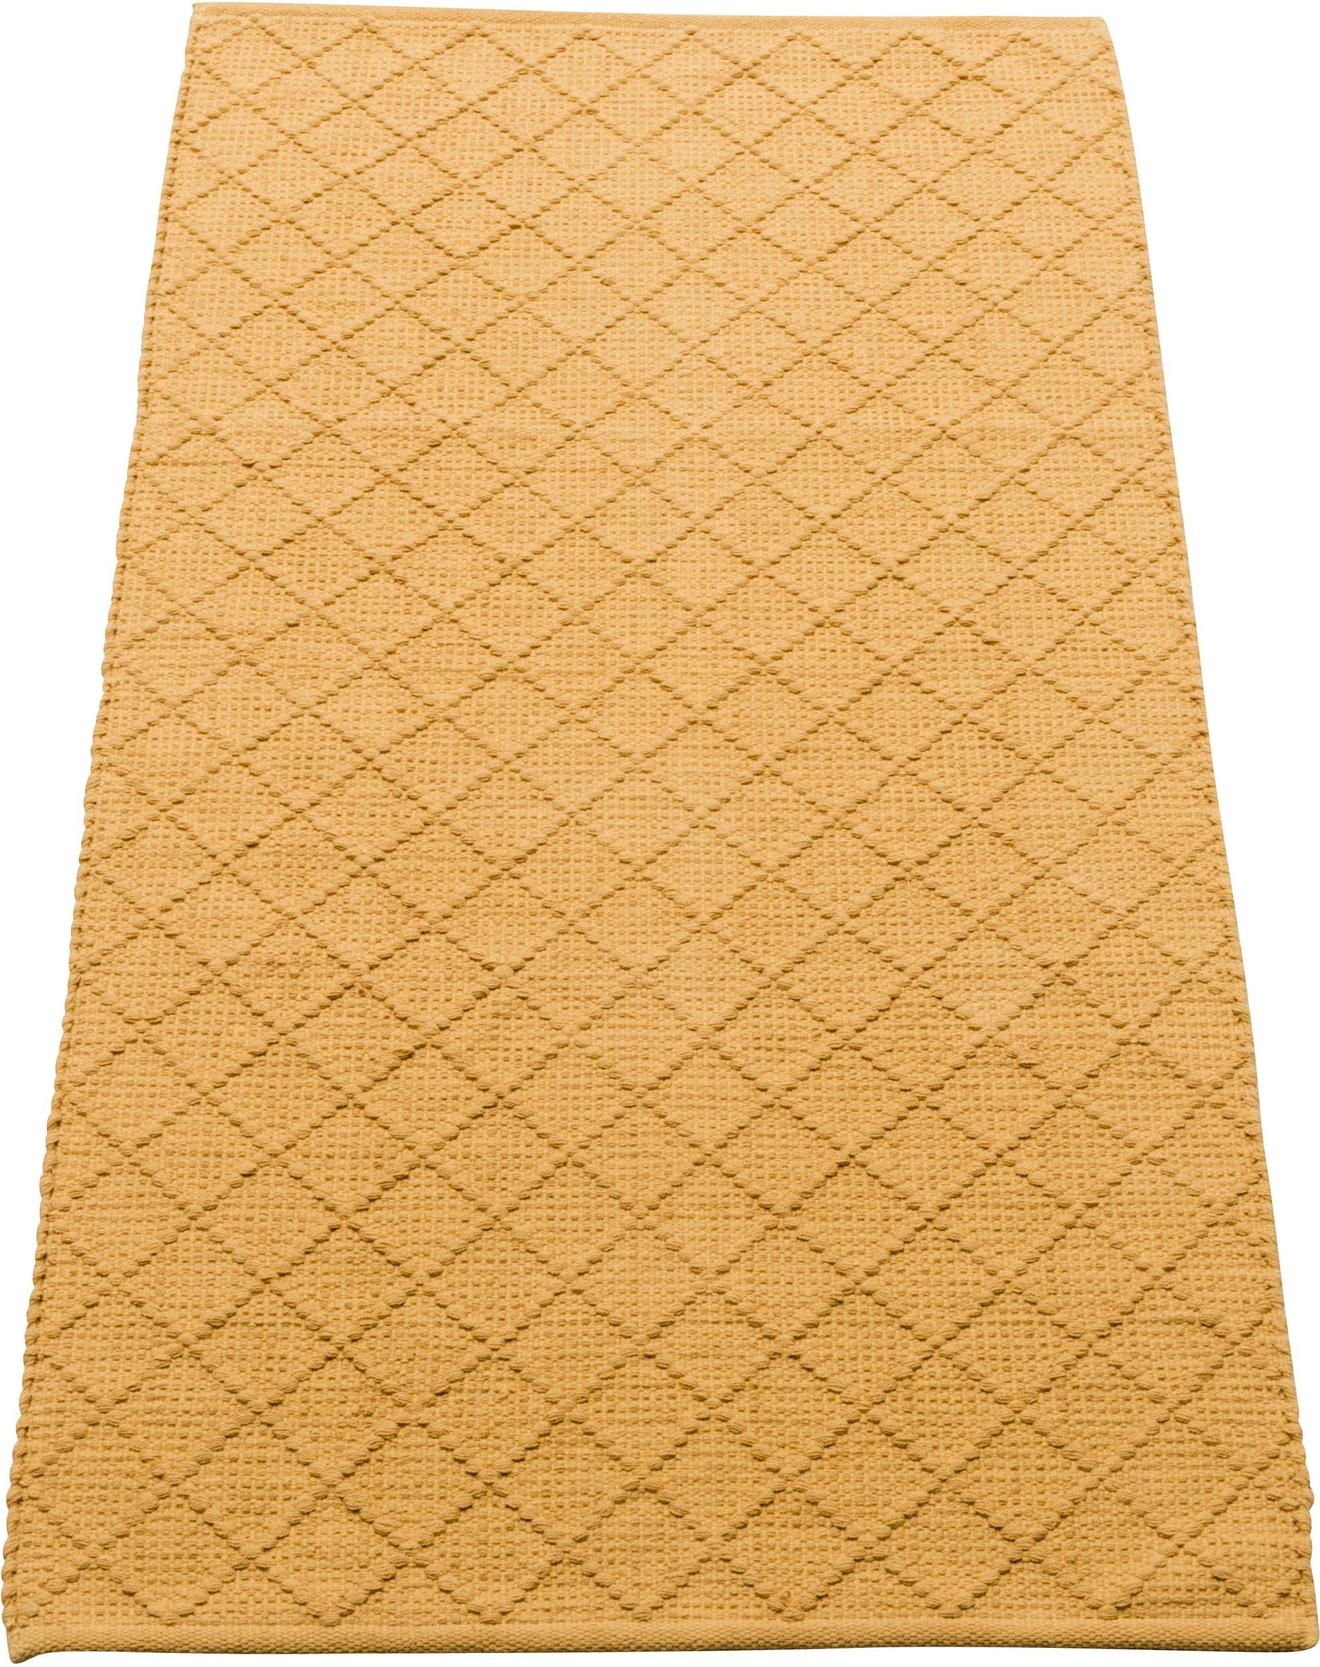 Koti matto 80x150 cm, keltainen tuote hintaan 19€ liikkeestä MASKU